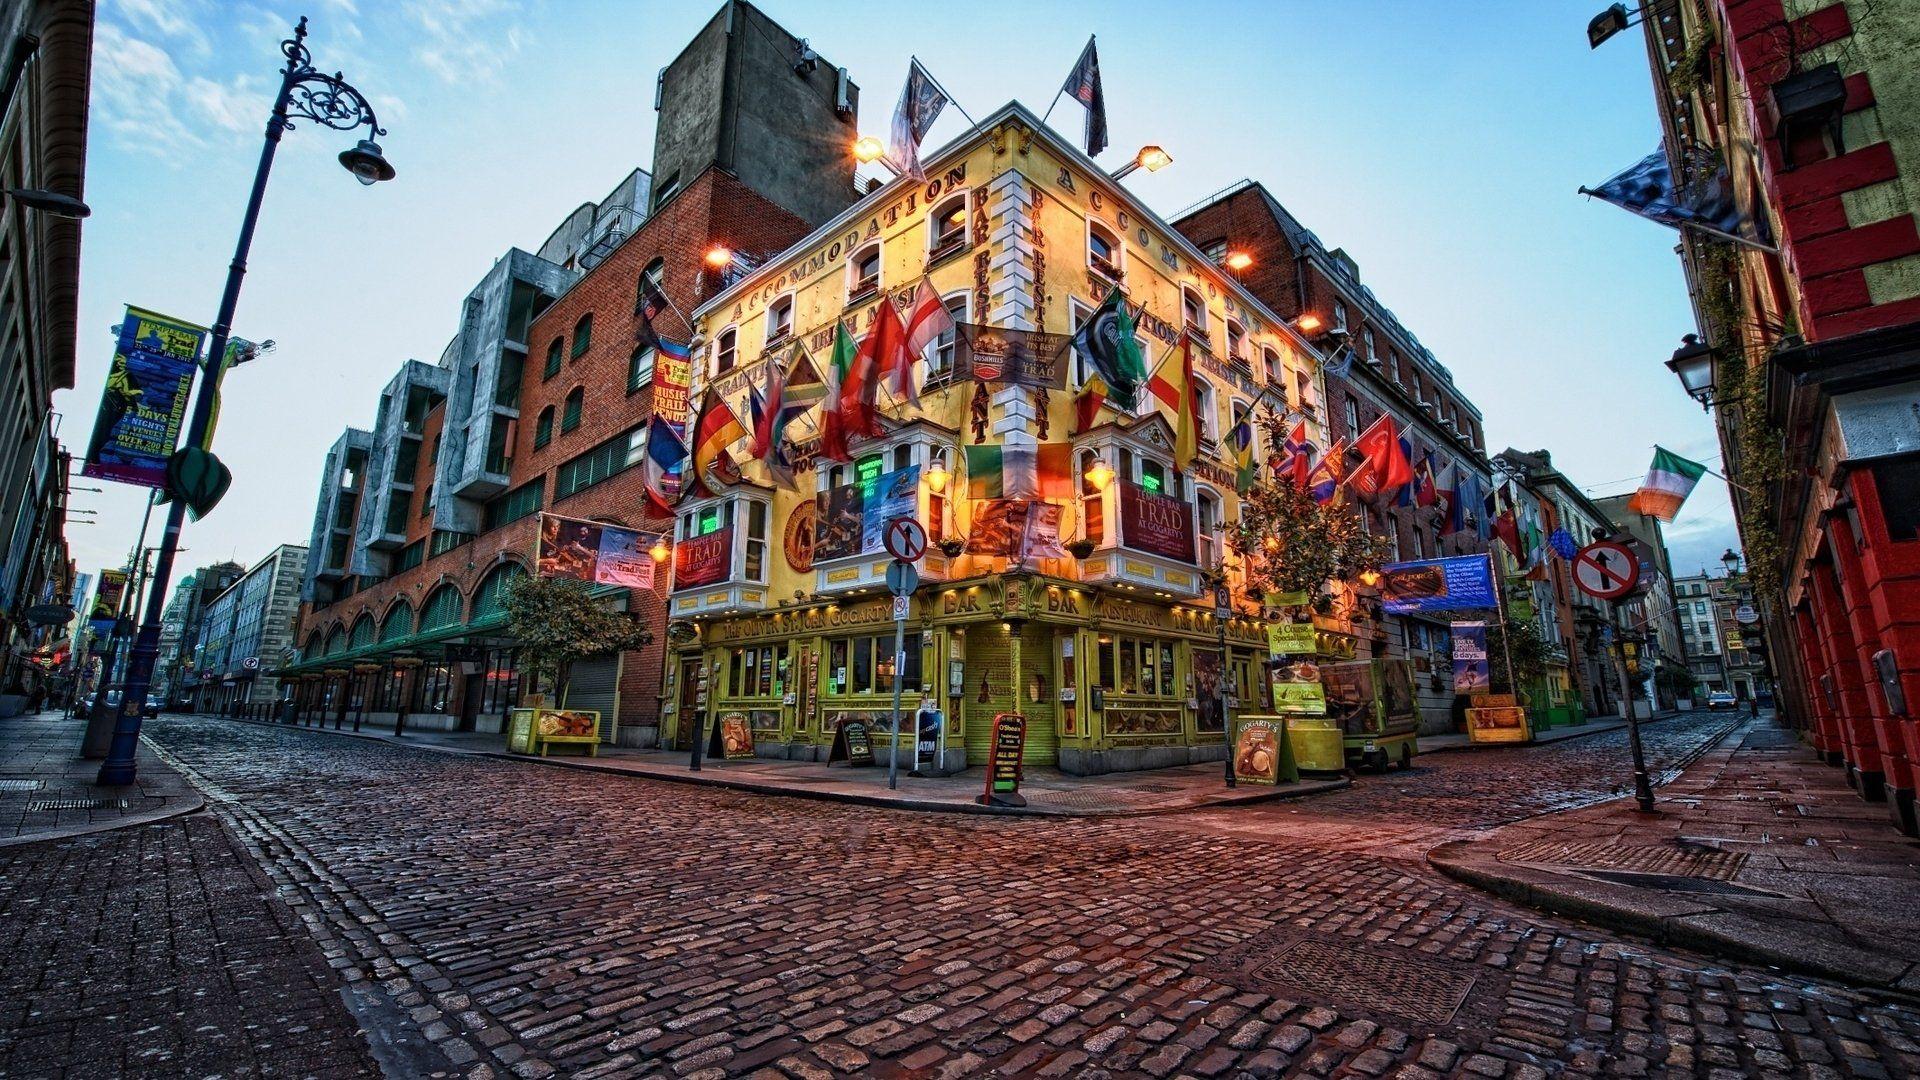 Hình nền máy tính Dublin đẹp nhất sẽ mang lại cho bạn một cái nhìn khác về thành phố trung tâm của Ireland. Hòa mình cùng bầu không khí của những đường phố lịch sử, trải nghiệm cuộc sống của người dân địa phương với các hình ảnh sinh động và đẹp mắt.